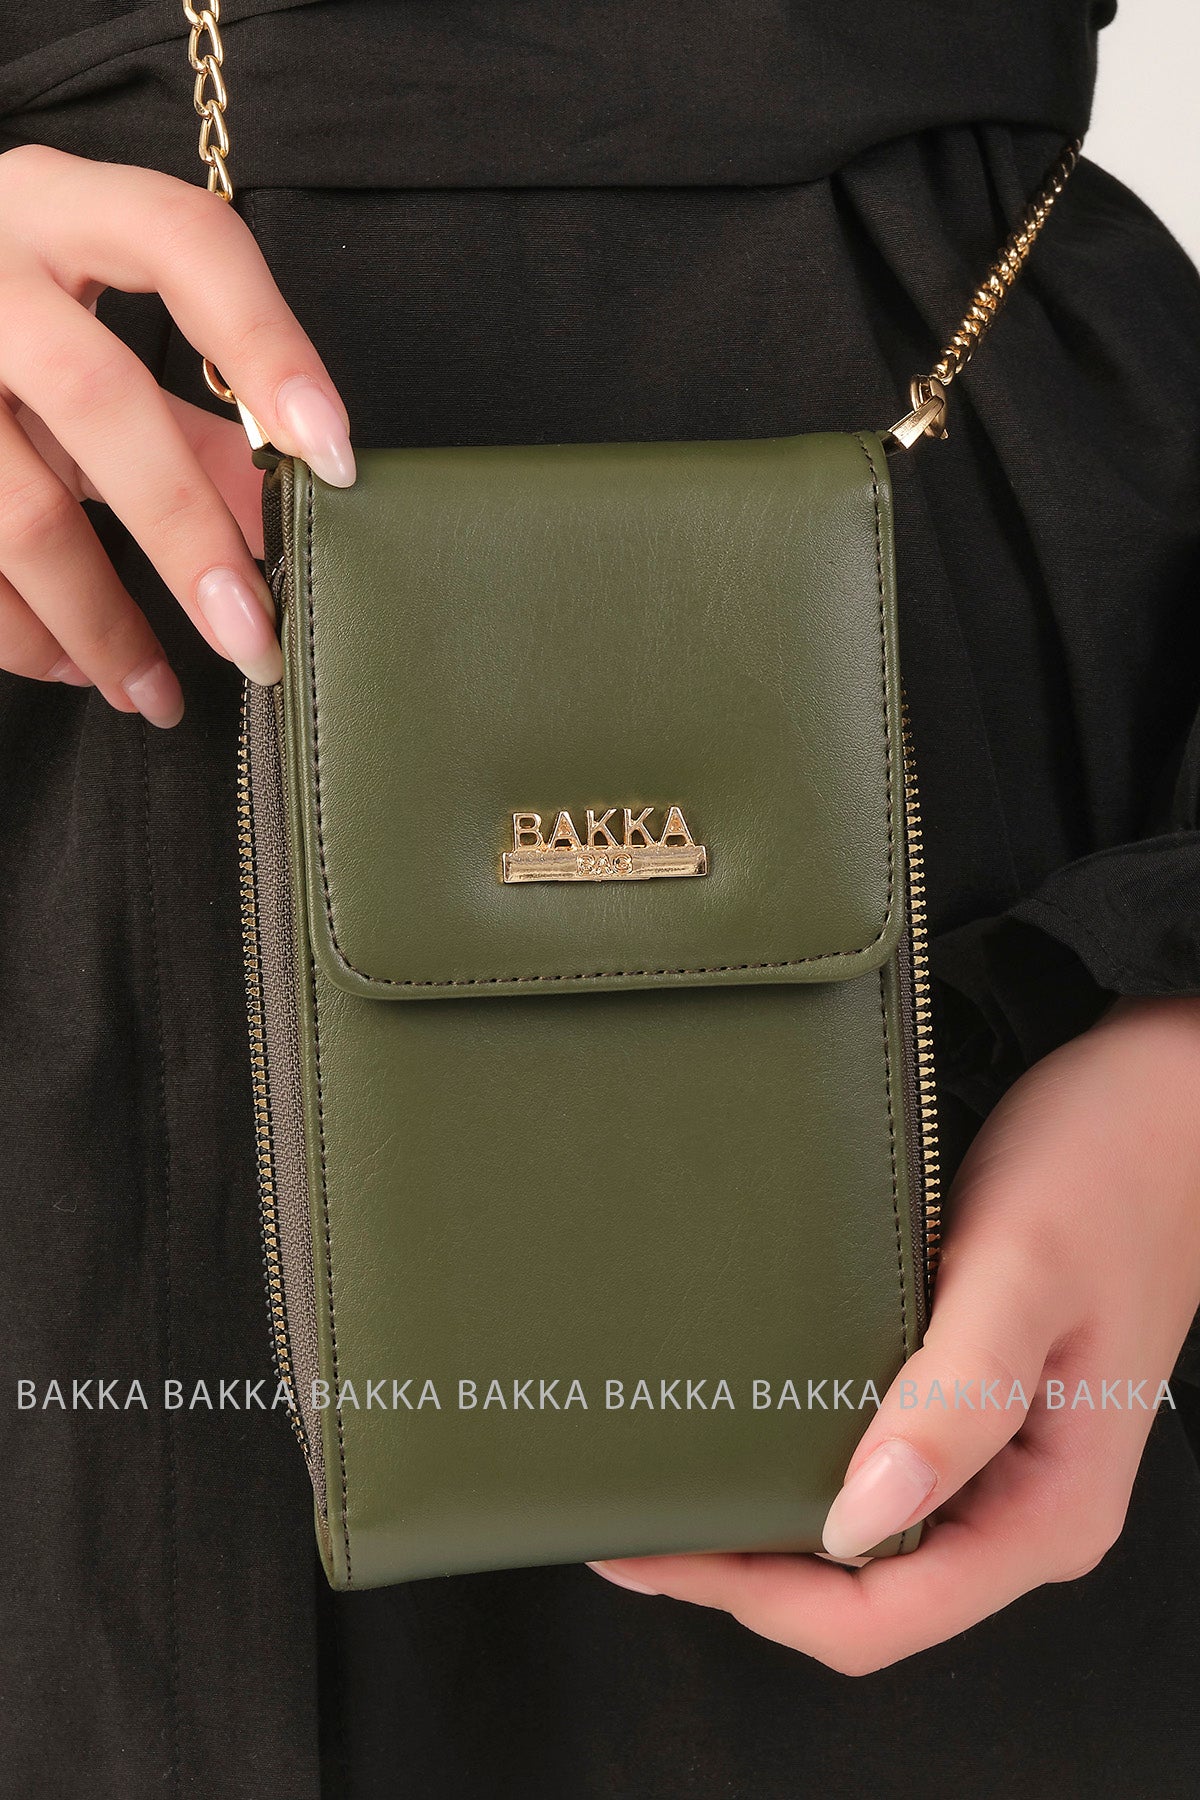 Mobile bag - 3600 - Green - bakkaclothing